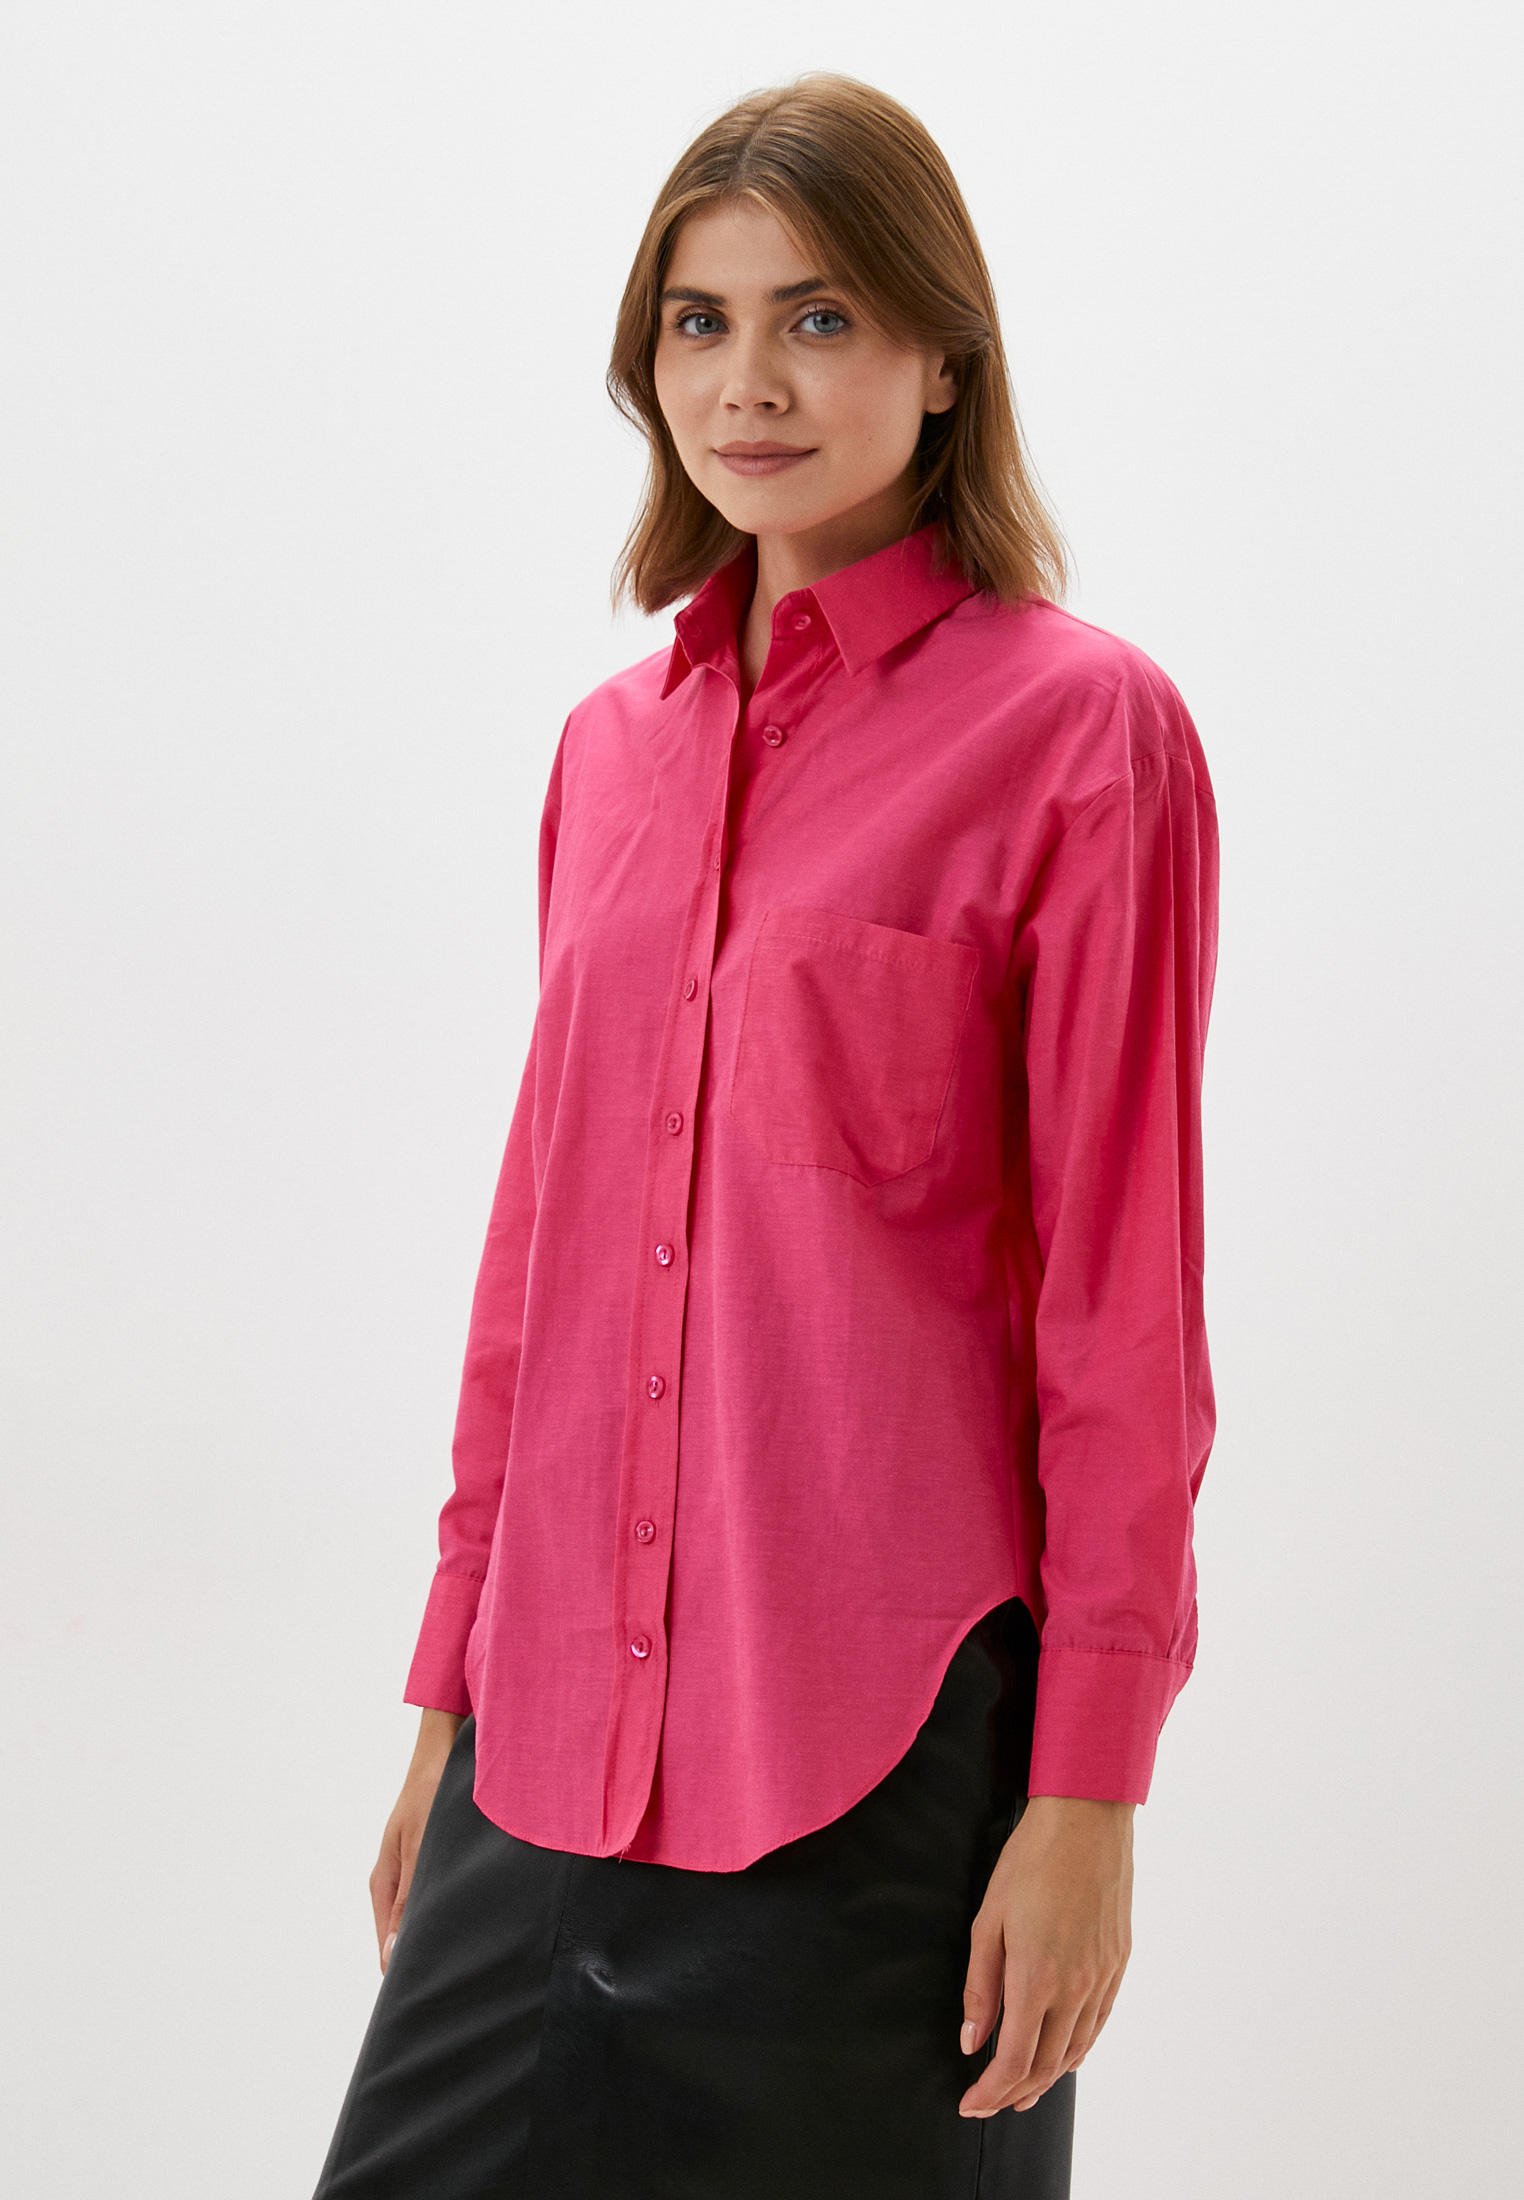 Женские рубашки с длинным рукавом Basics & More BA429930: изображение 1